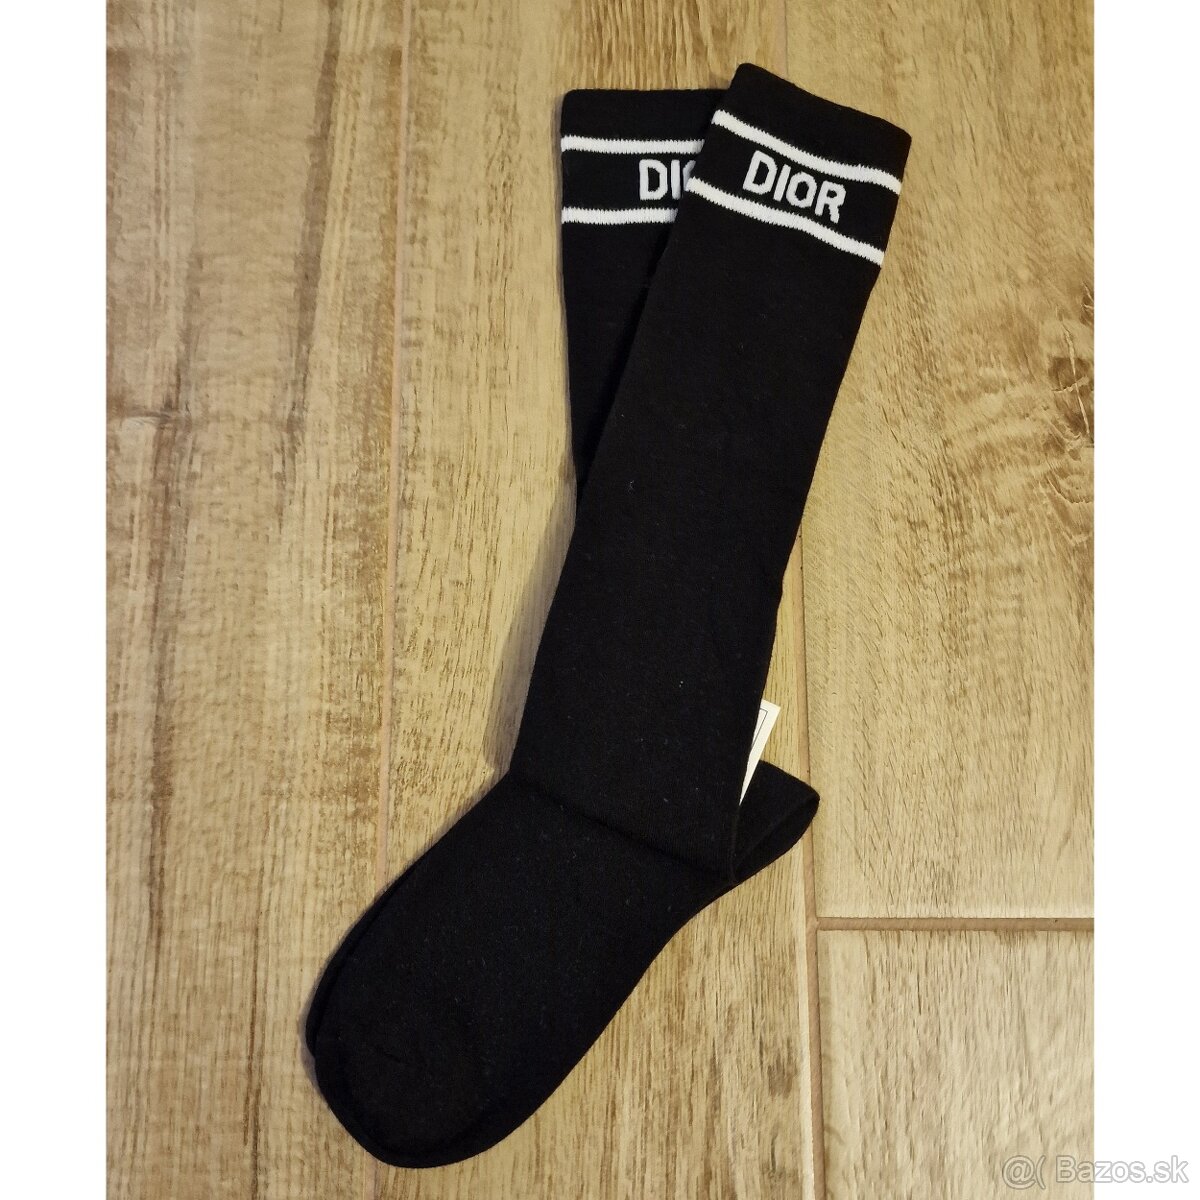 Dior ponožky/podkolienky